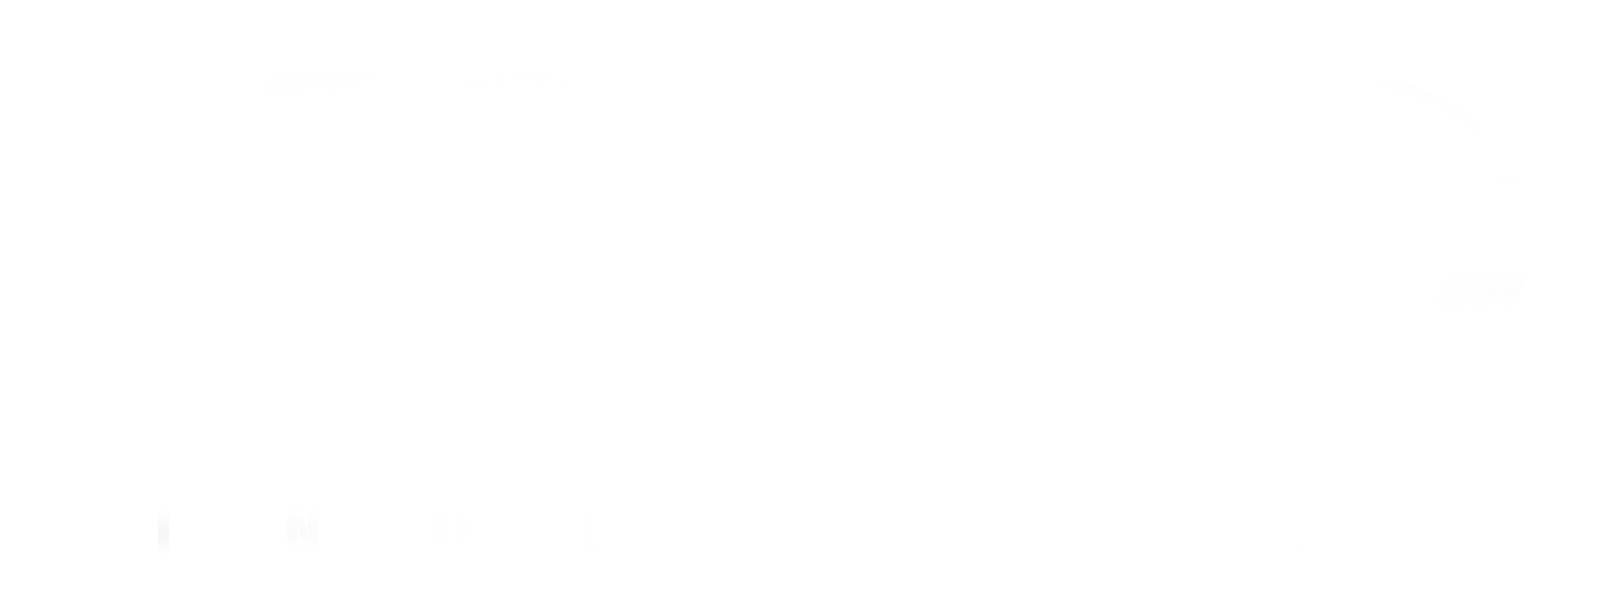 Kolko Industries